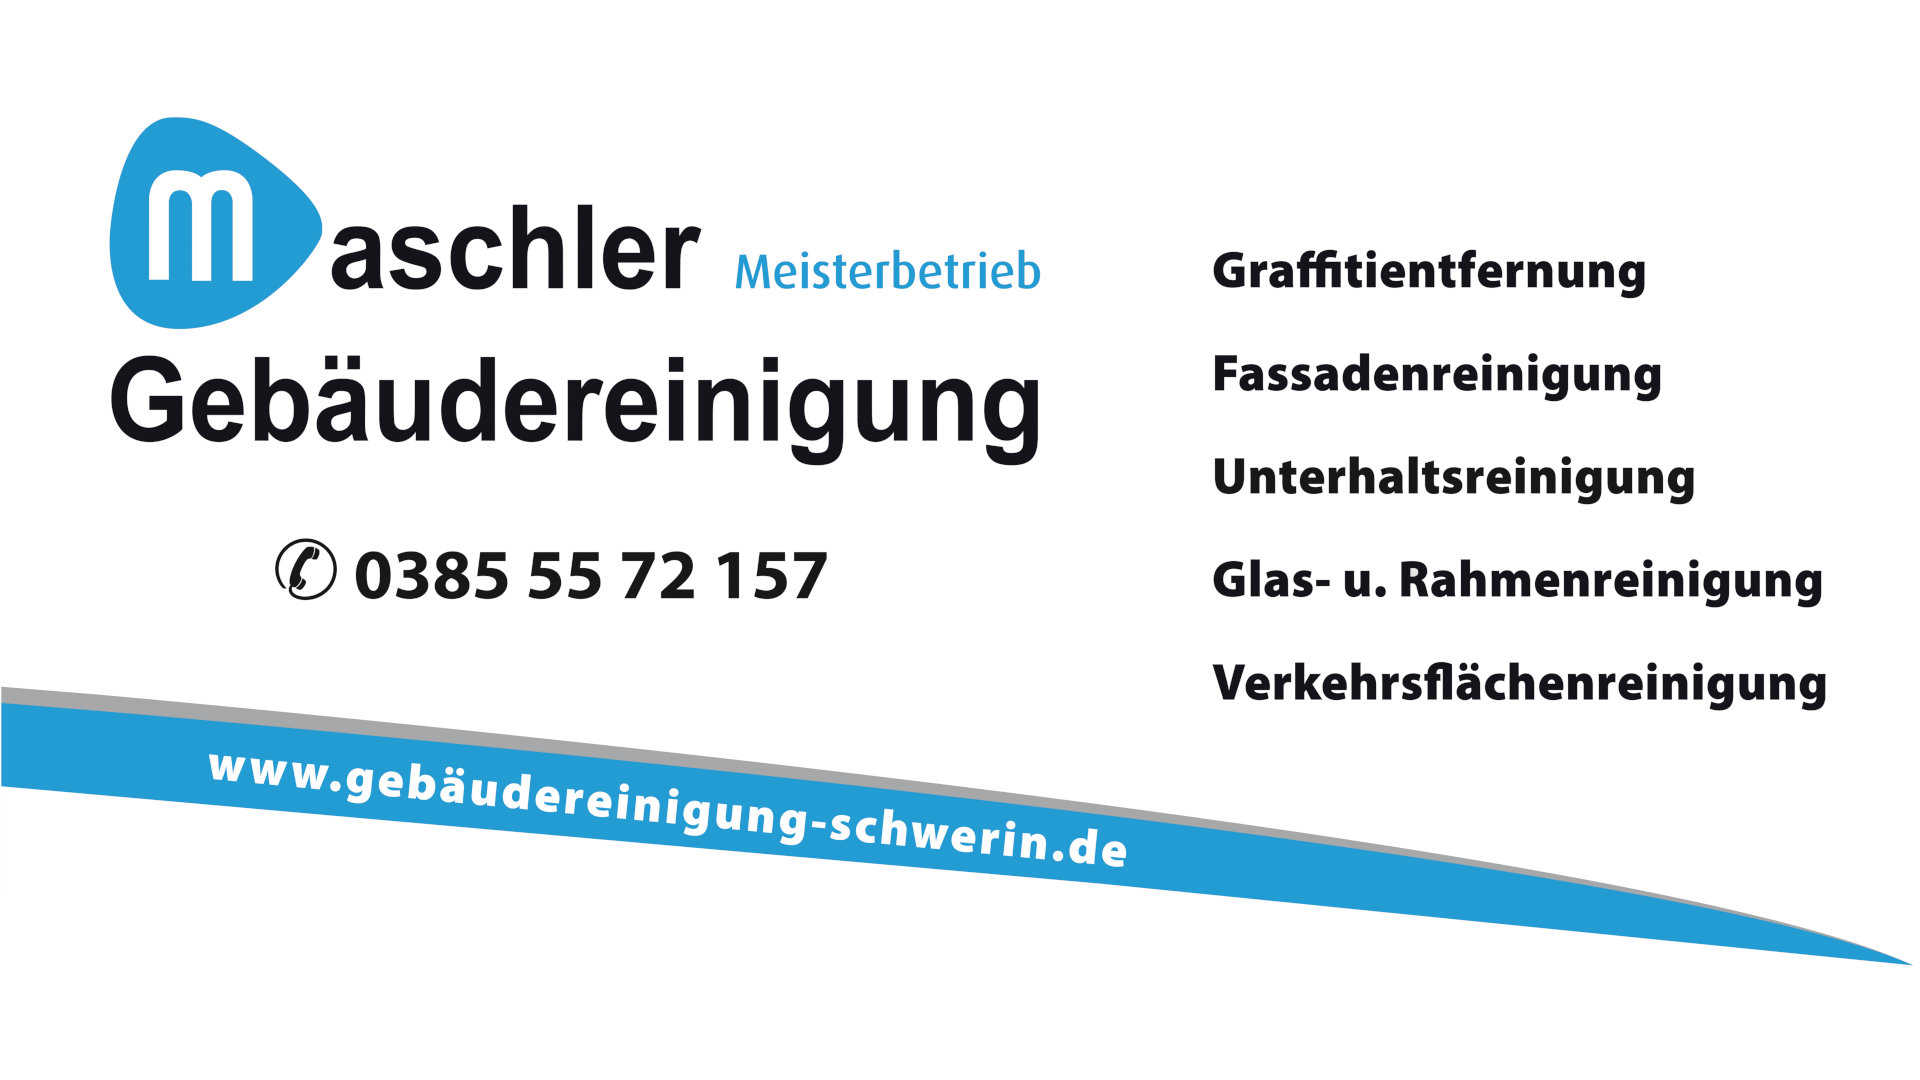 Gebäudereinigung Maschler GmbH